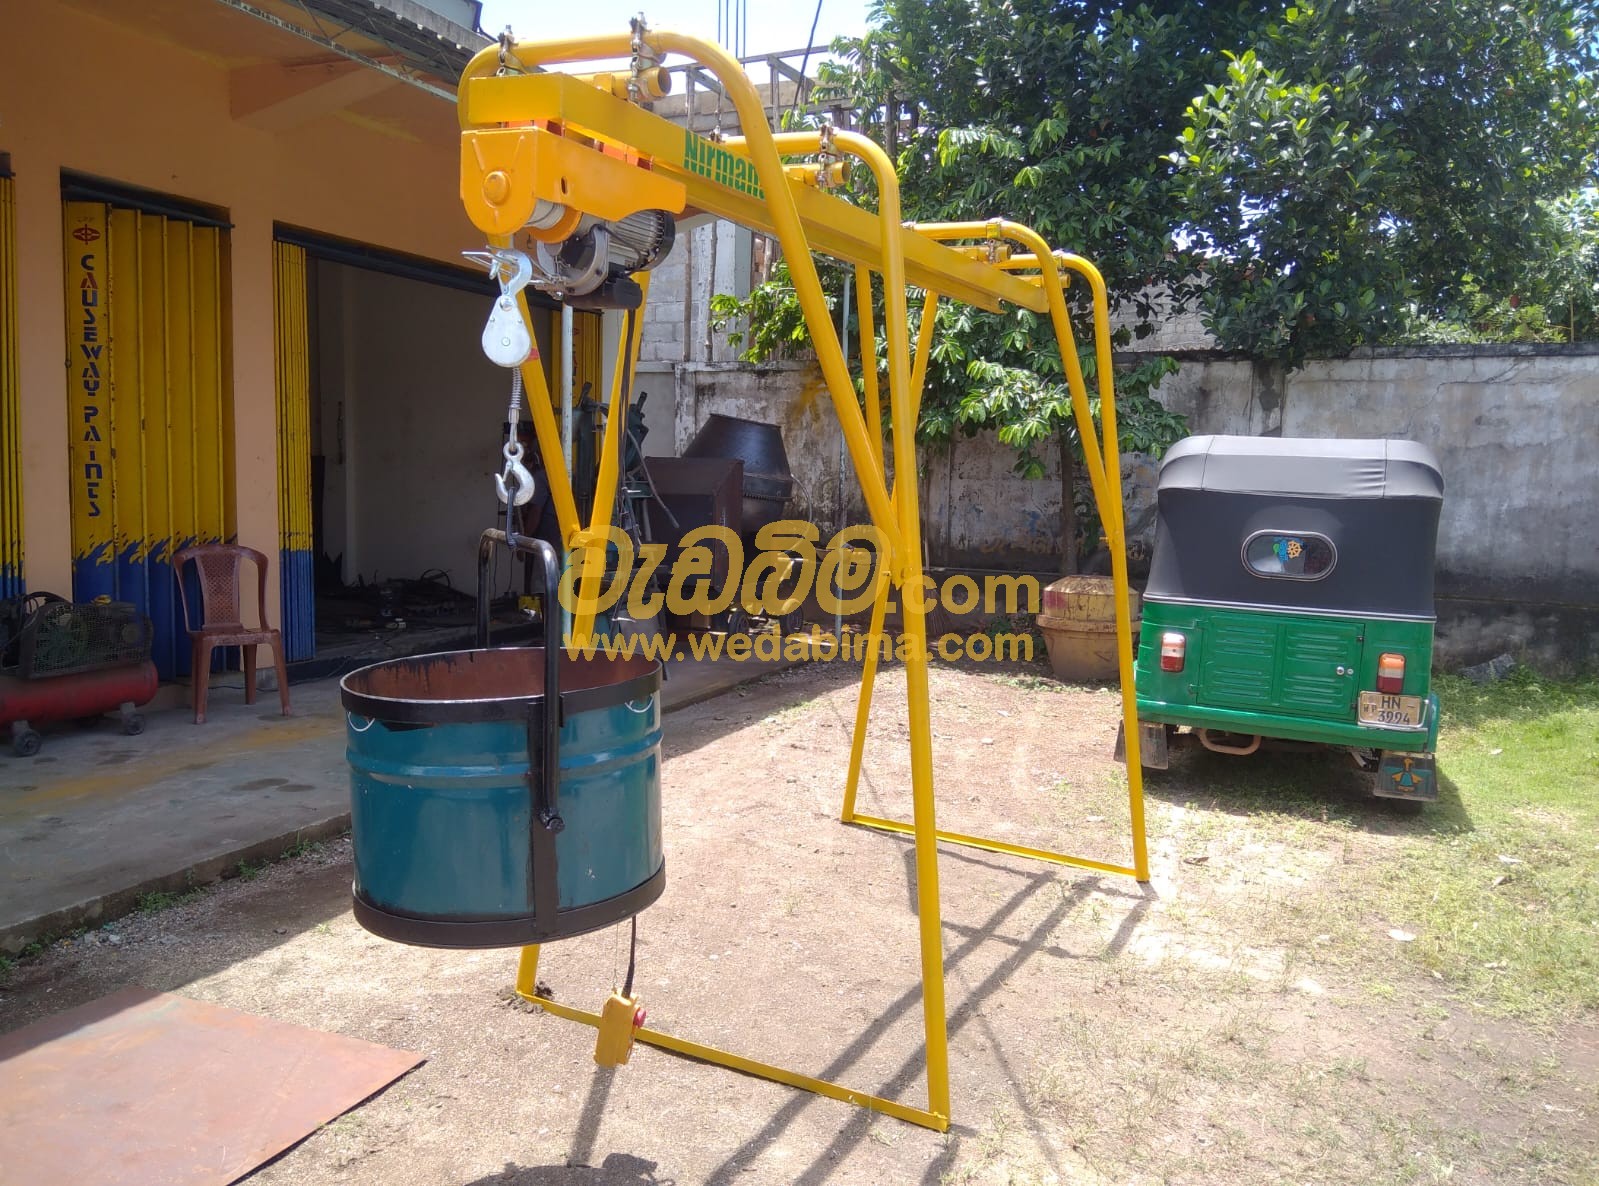 Electric hoist price in Sri Lanka